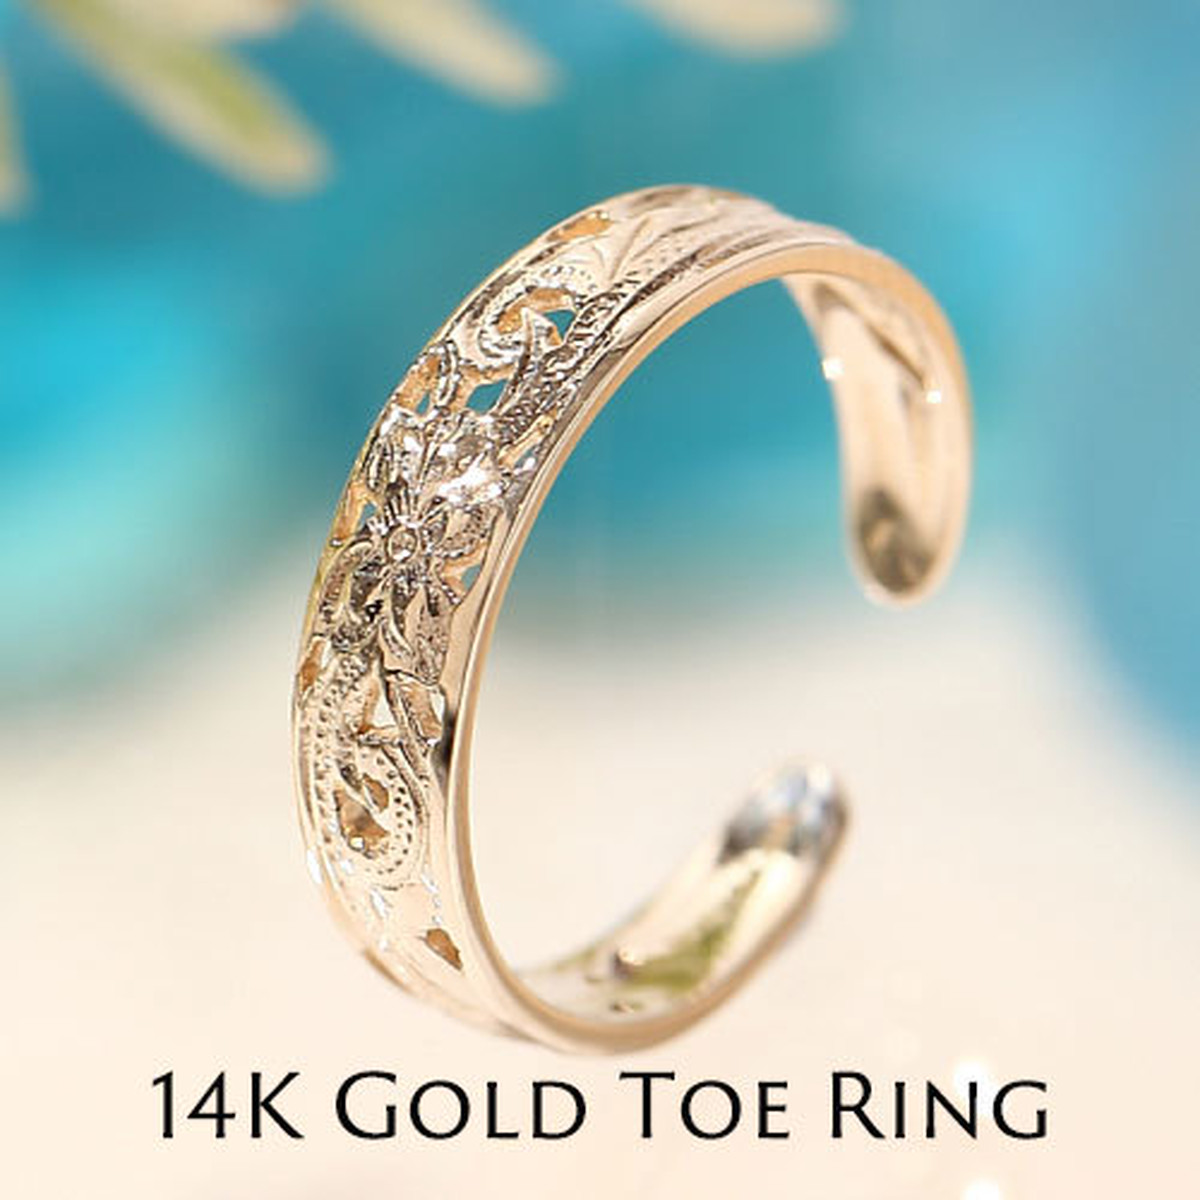 14kイエローゴールド 透かし彫り プレゼントトゥリング ピンキーリング 指輪 ハワイジュエリー Hawaiian Rose Glitter ハワイアンジュエリー リング ネックレス 通販